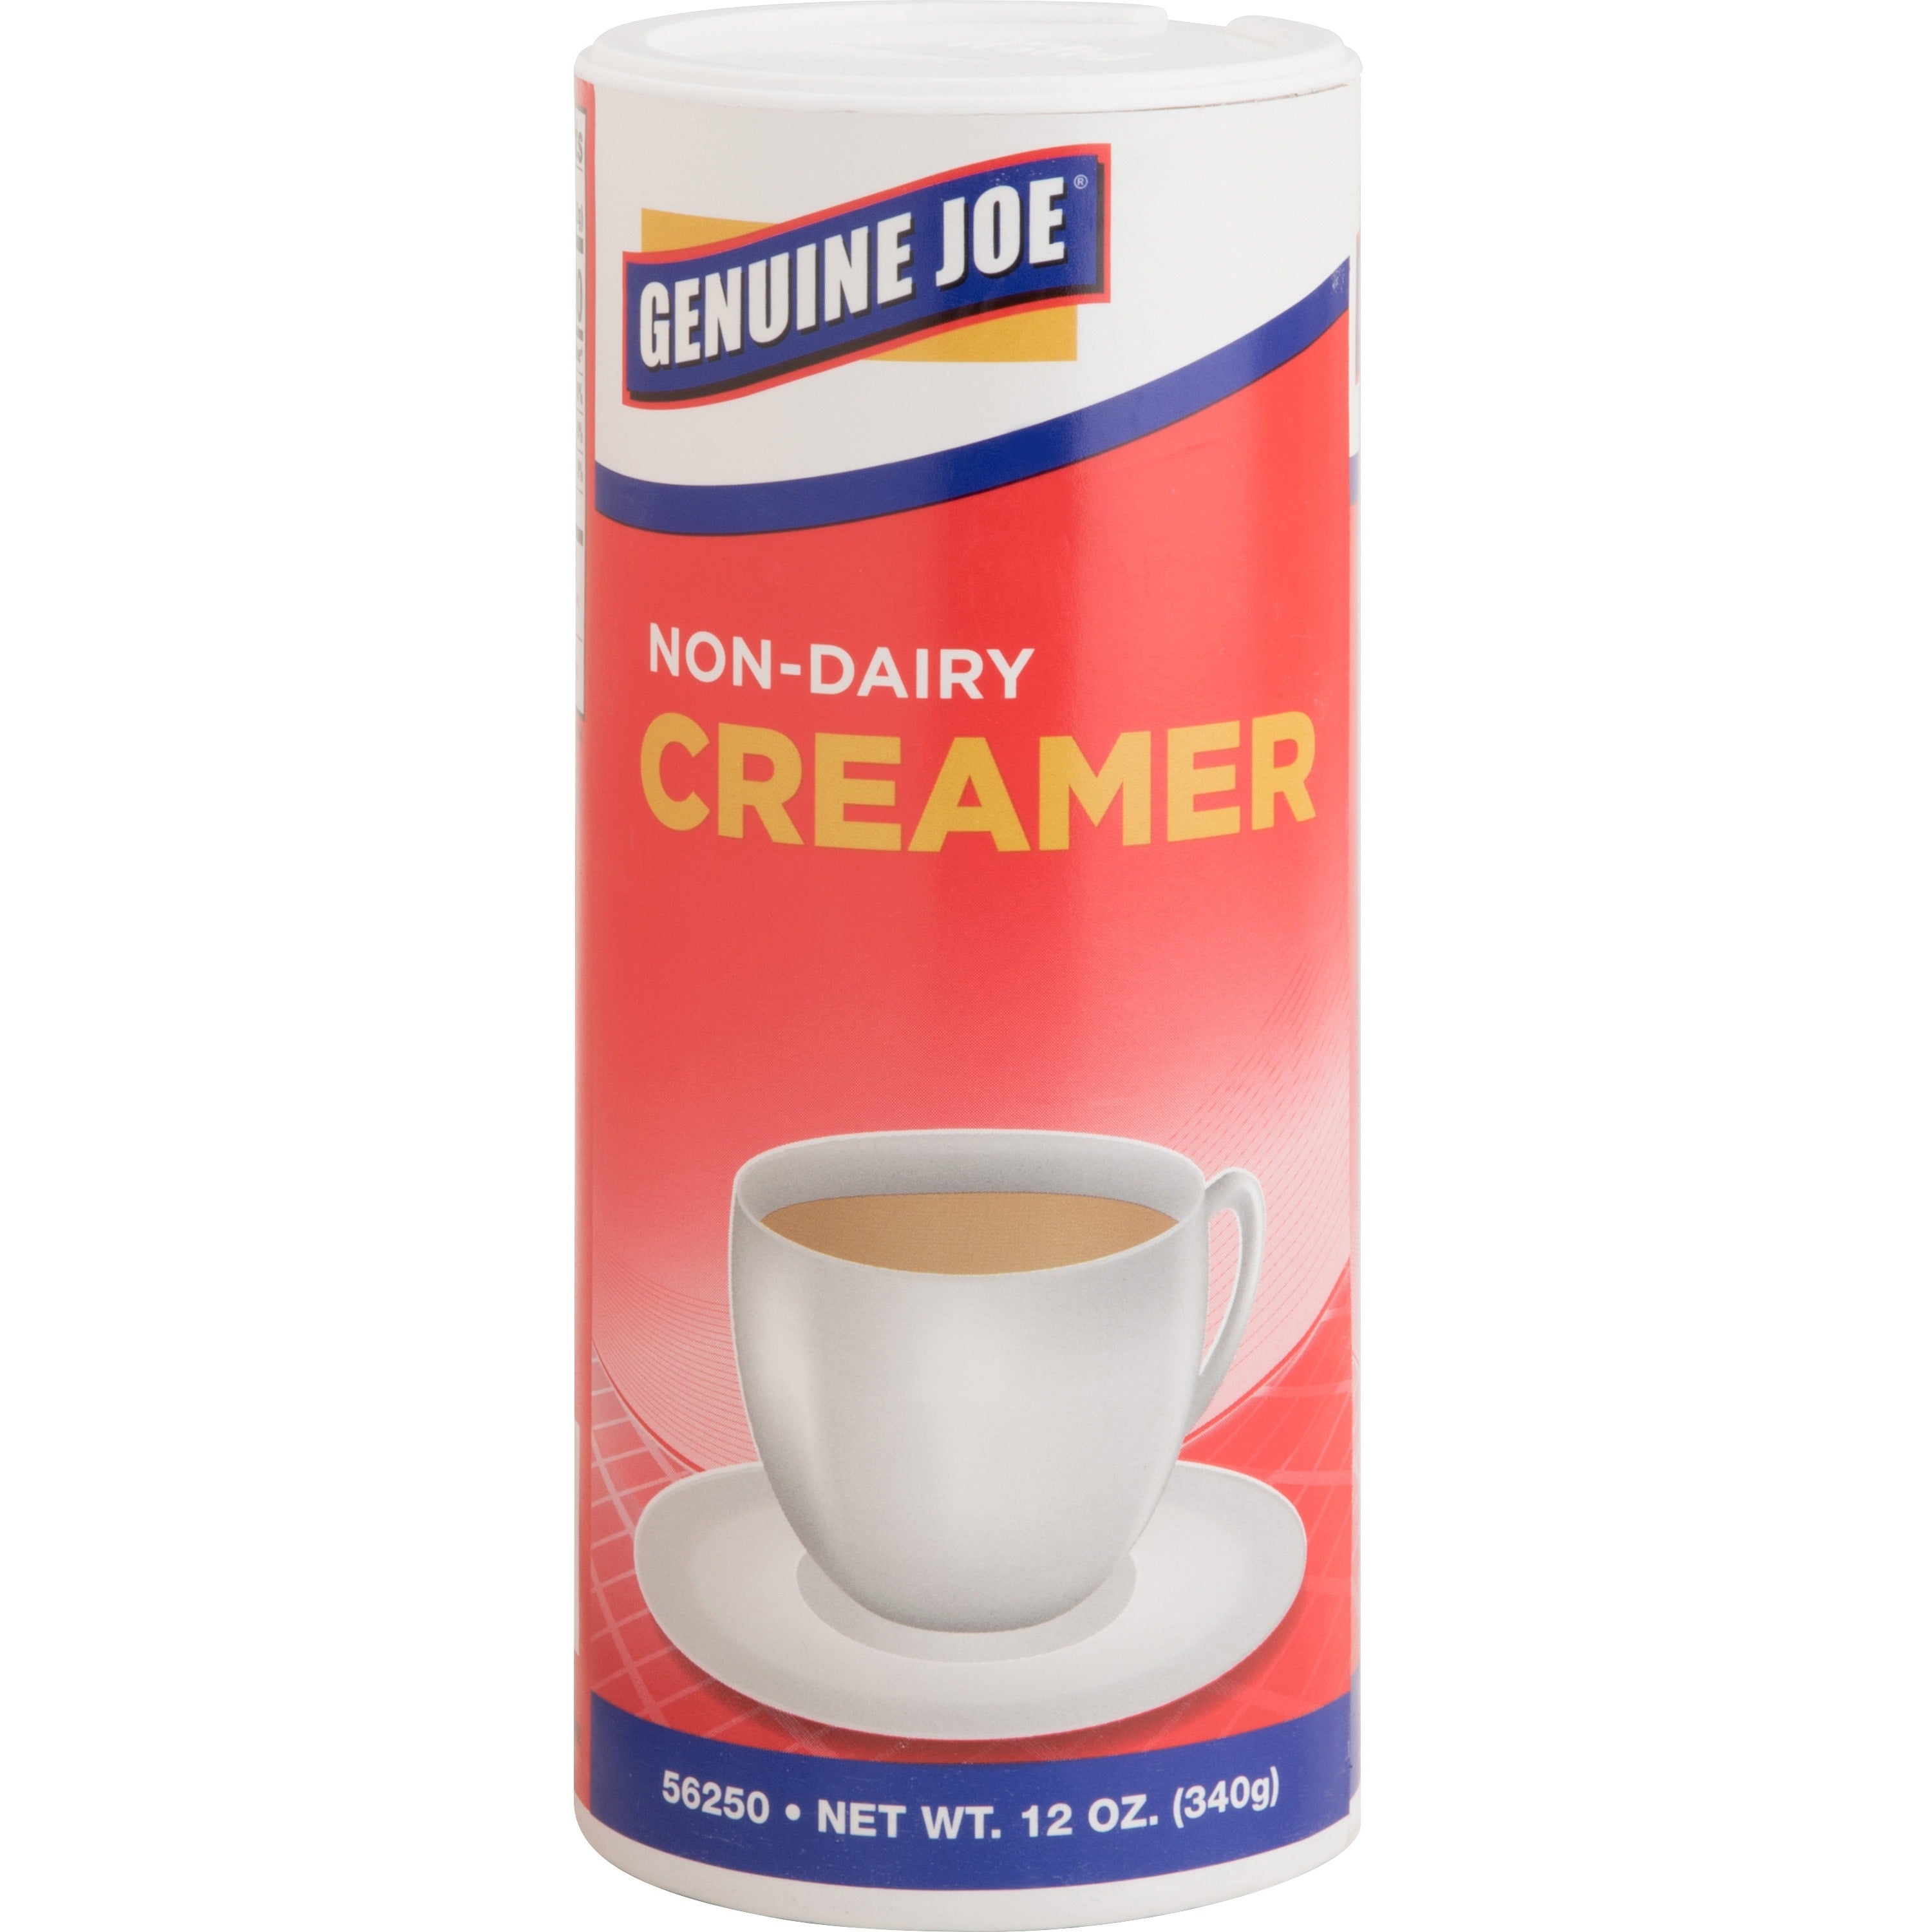 Genuine Joe Nondairy Creamer Canister - 0.75 lb (12 oz) Canister - 24/Carton - 